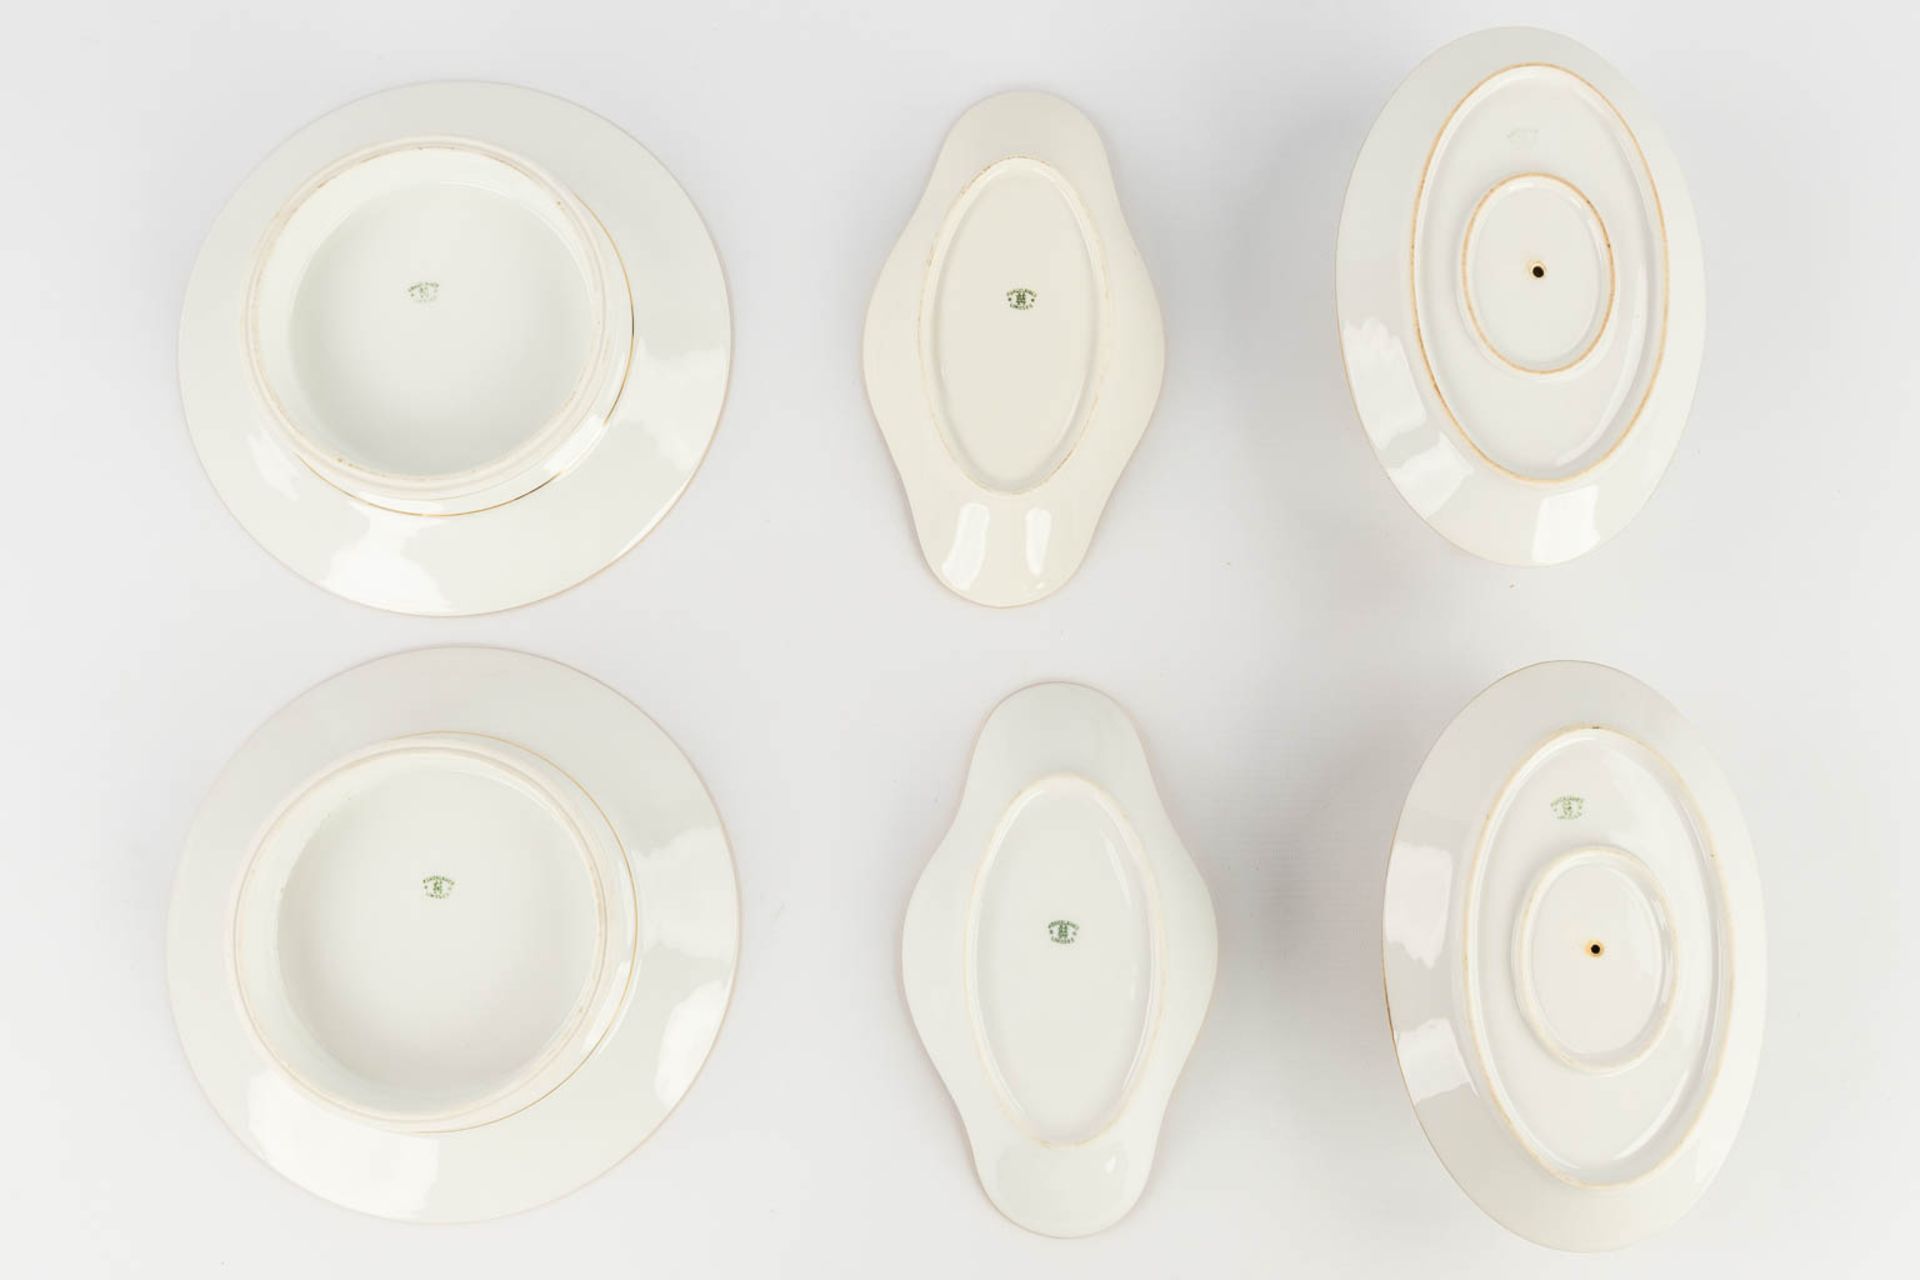 Porcelaine De Limoges, a 77 piece large dinner service. (L: 29 x W: 44 cm) - Image 10 of 20